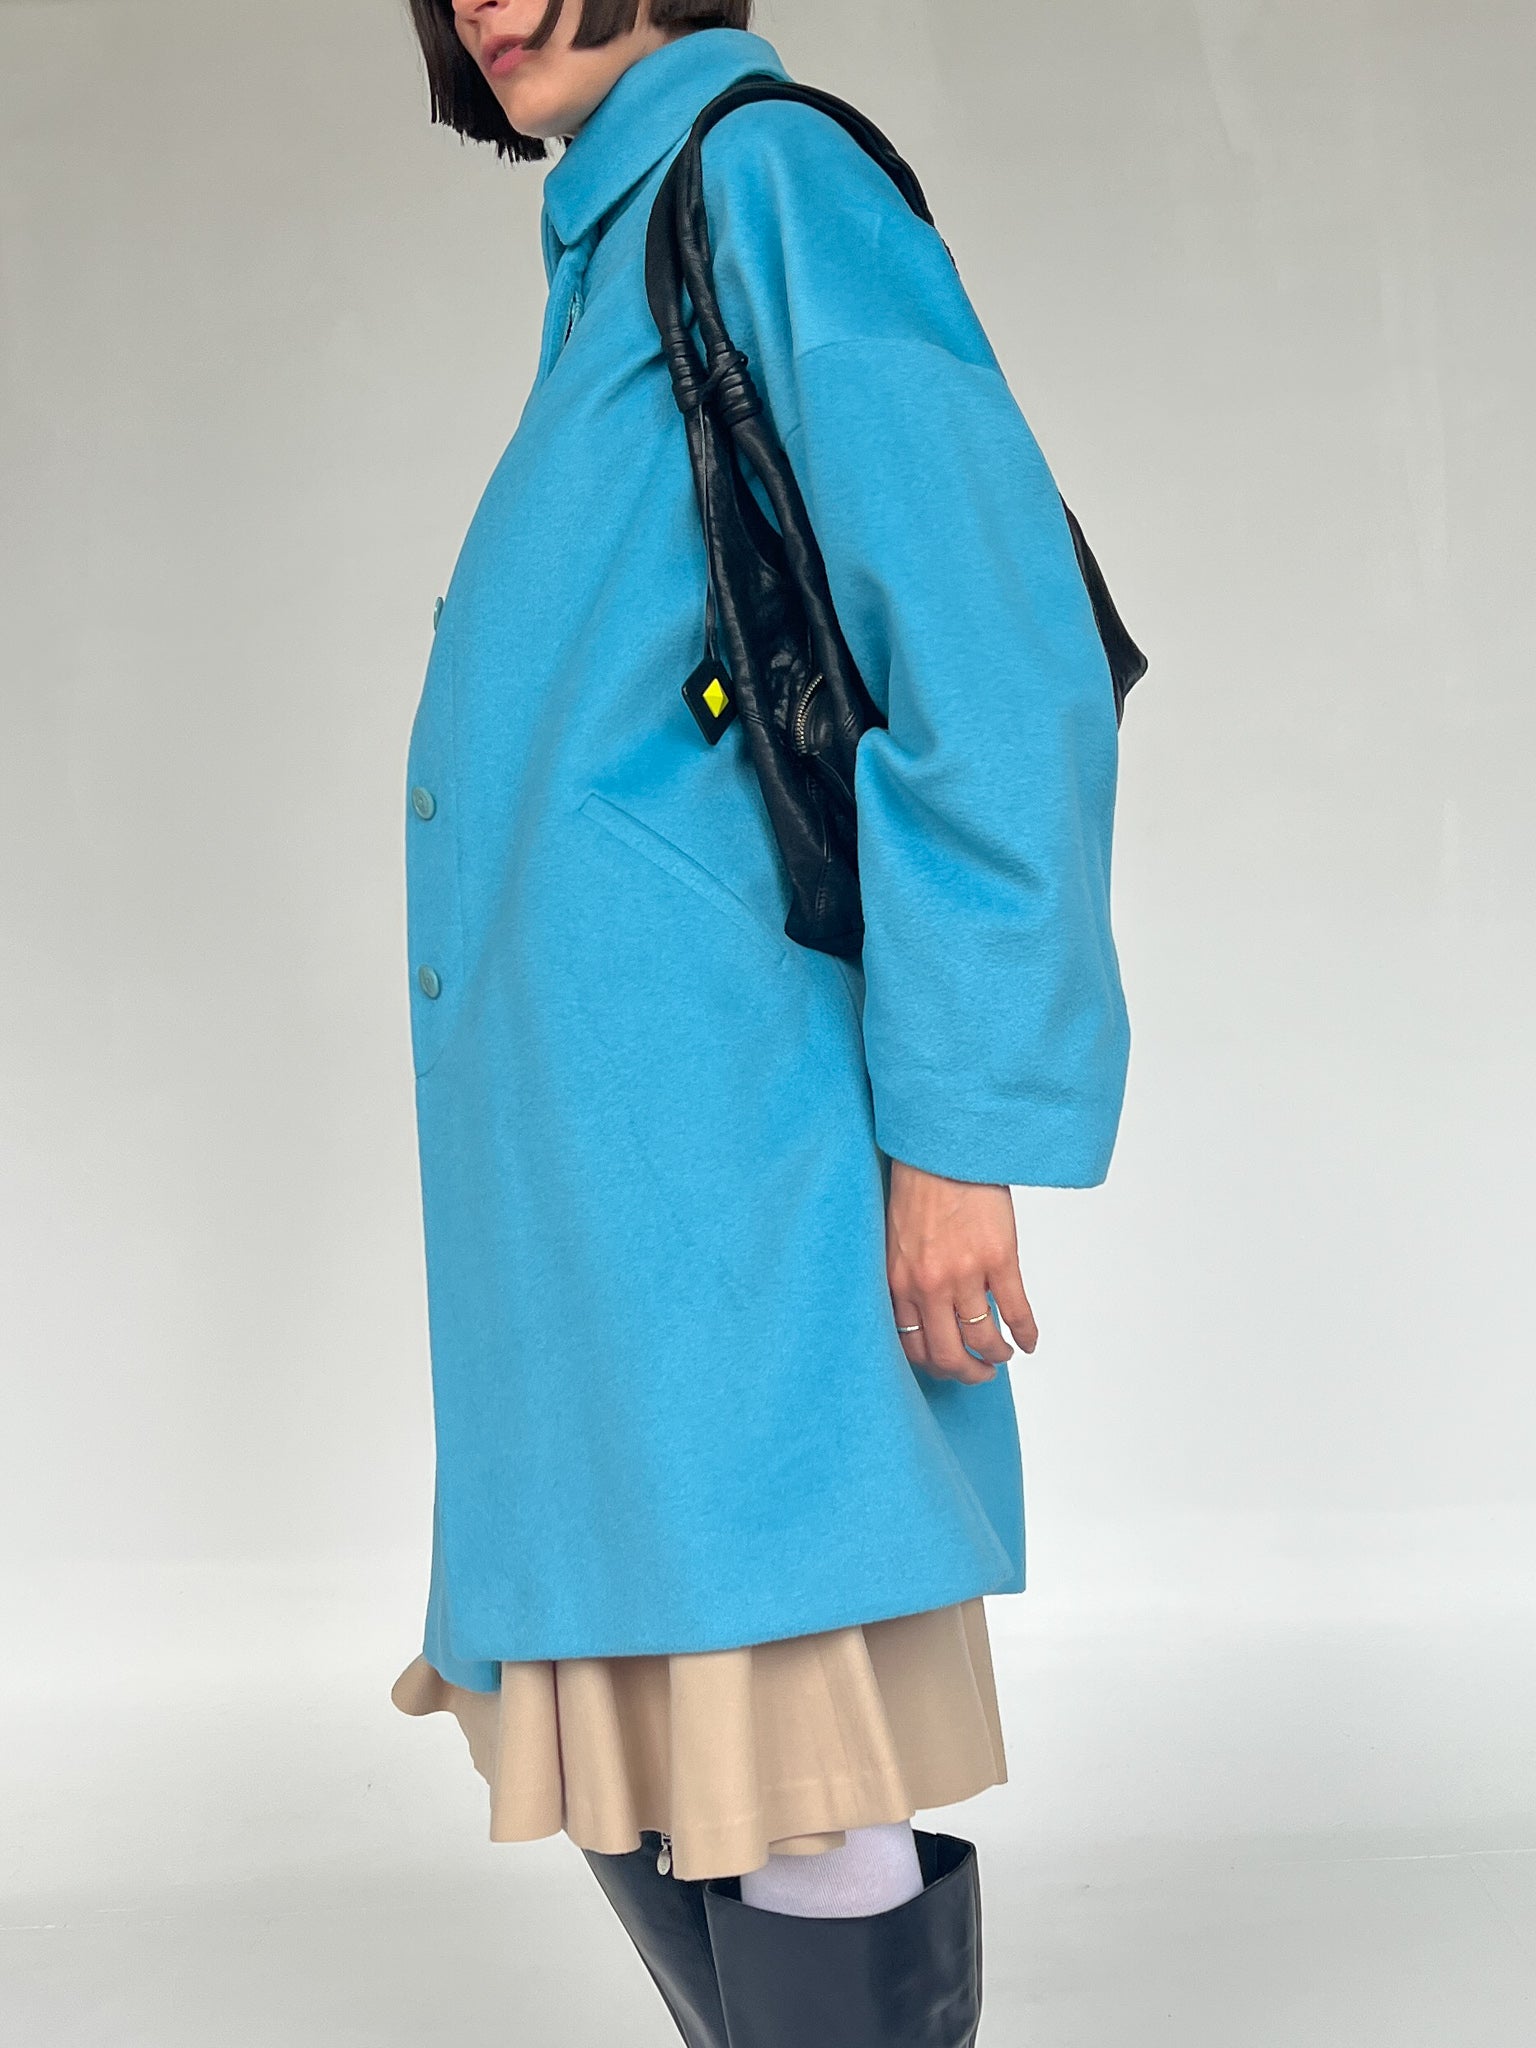 Louis Feraud Vintage 1980's Faux Fur Coat - Blue Coats, Clothing -  WLOFE25386